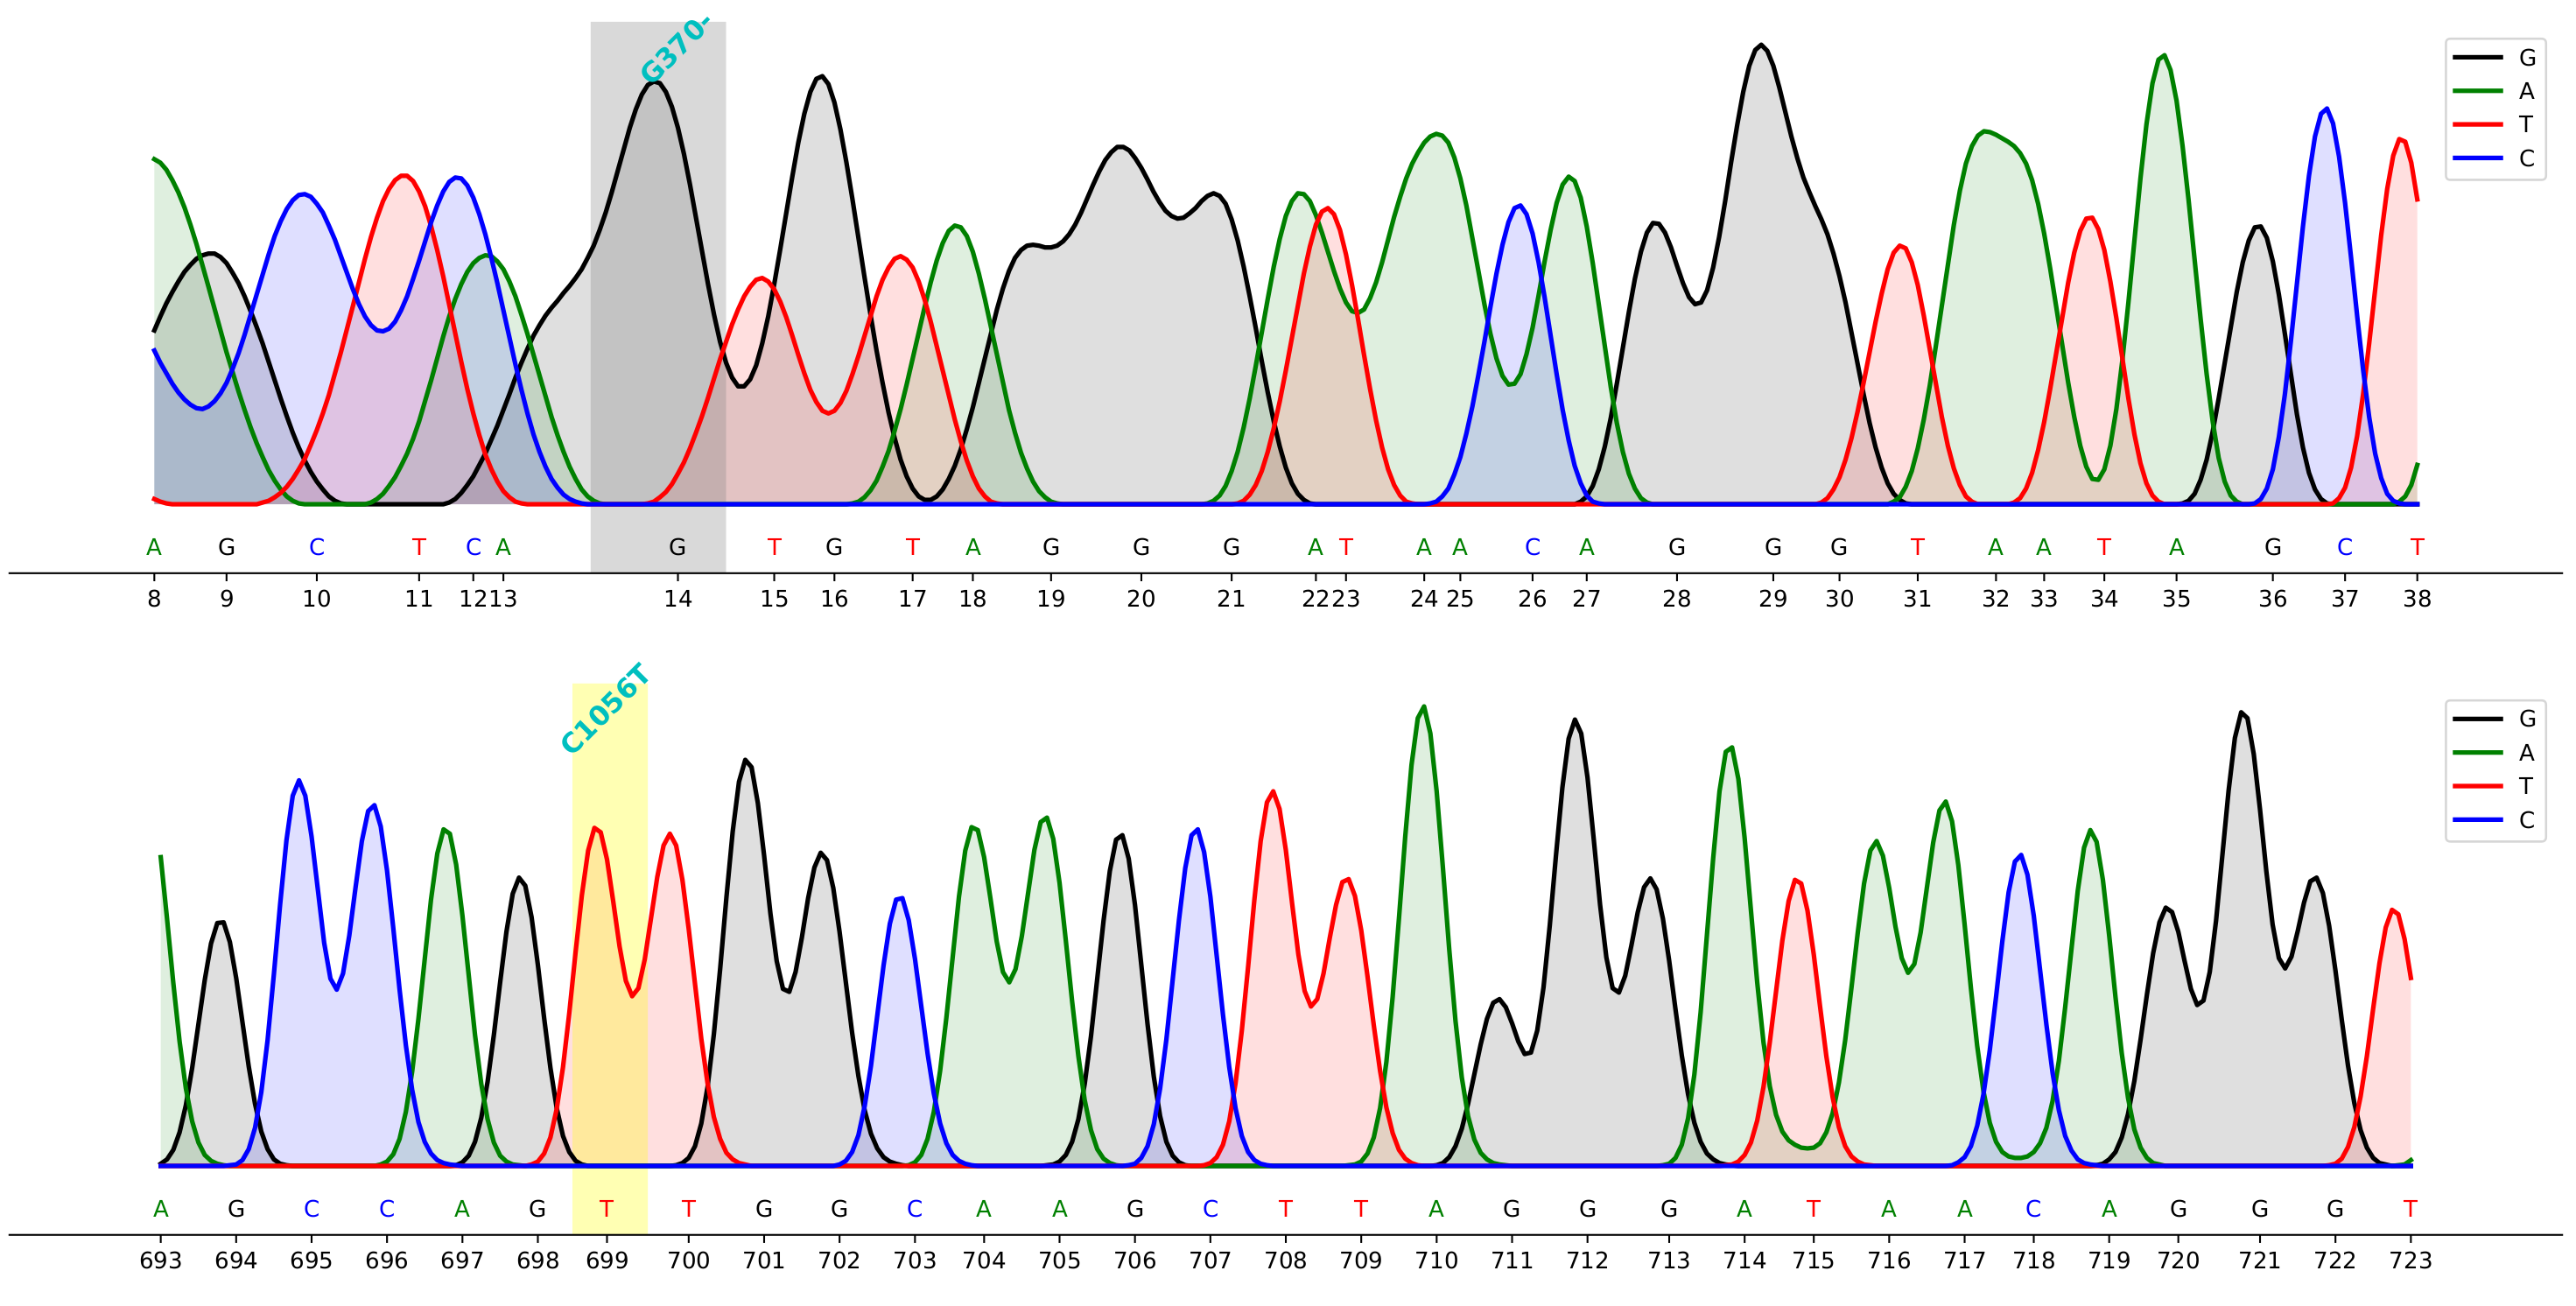 plot chromatogram with mutation